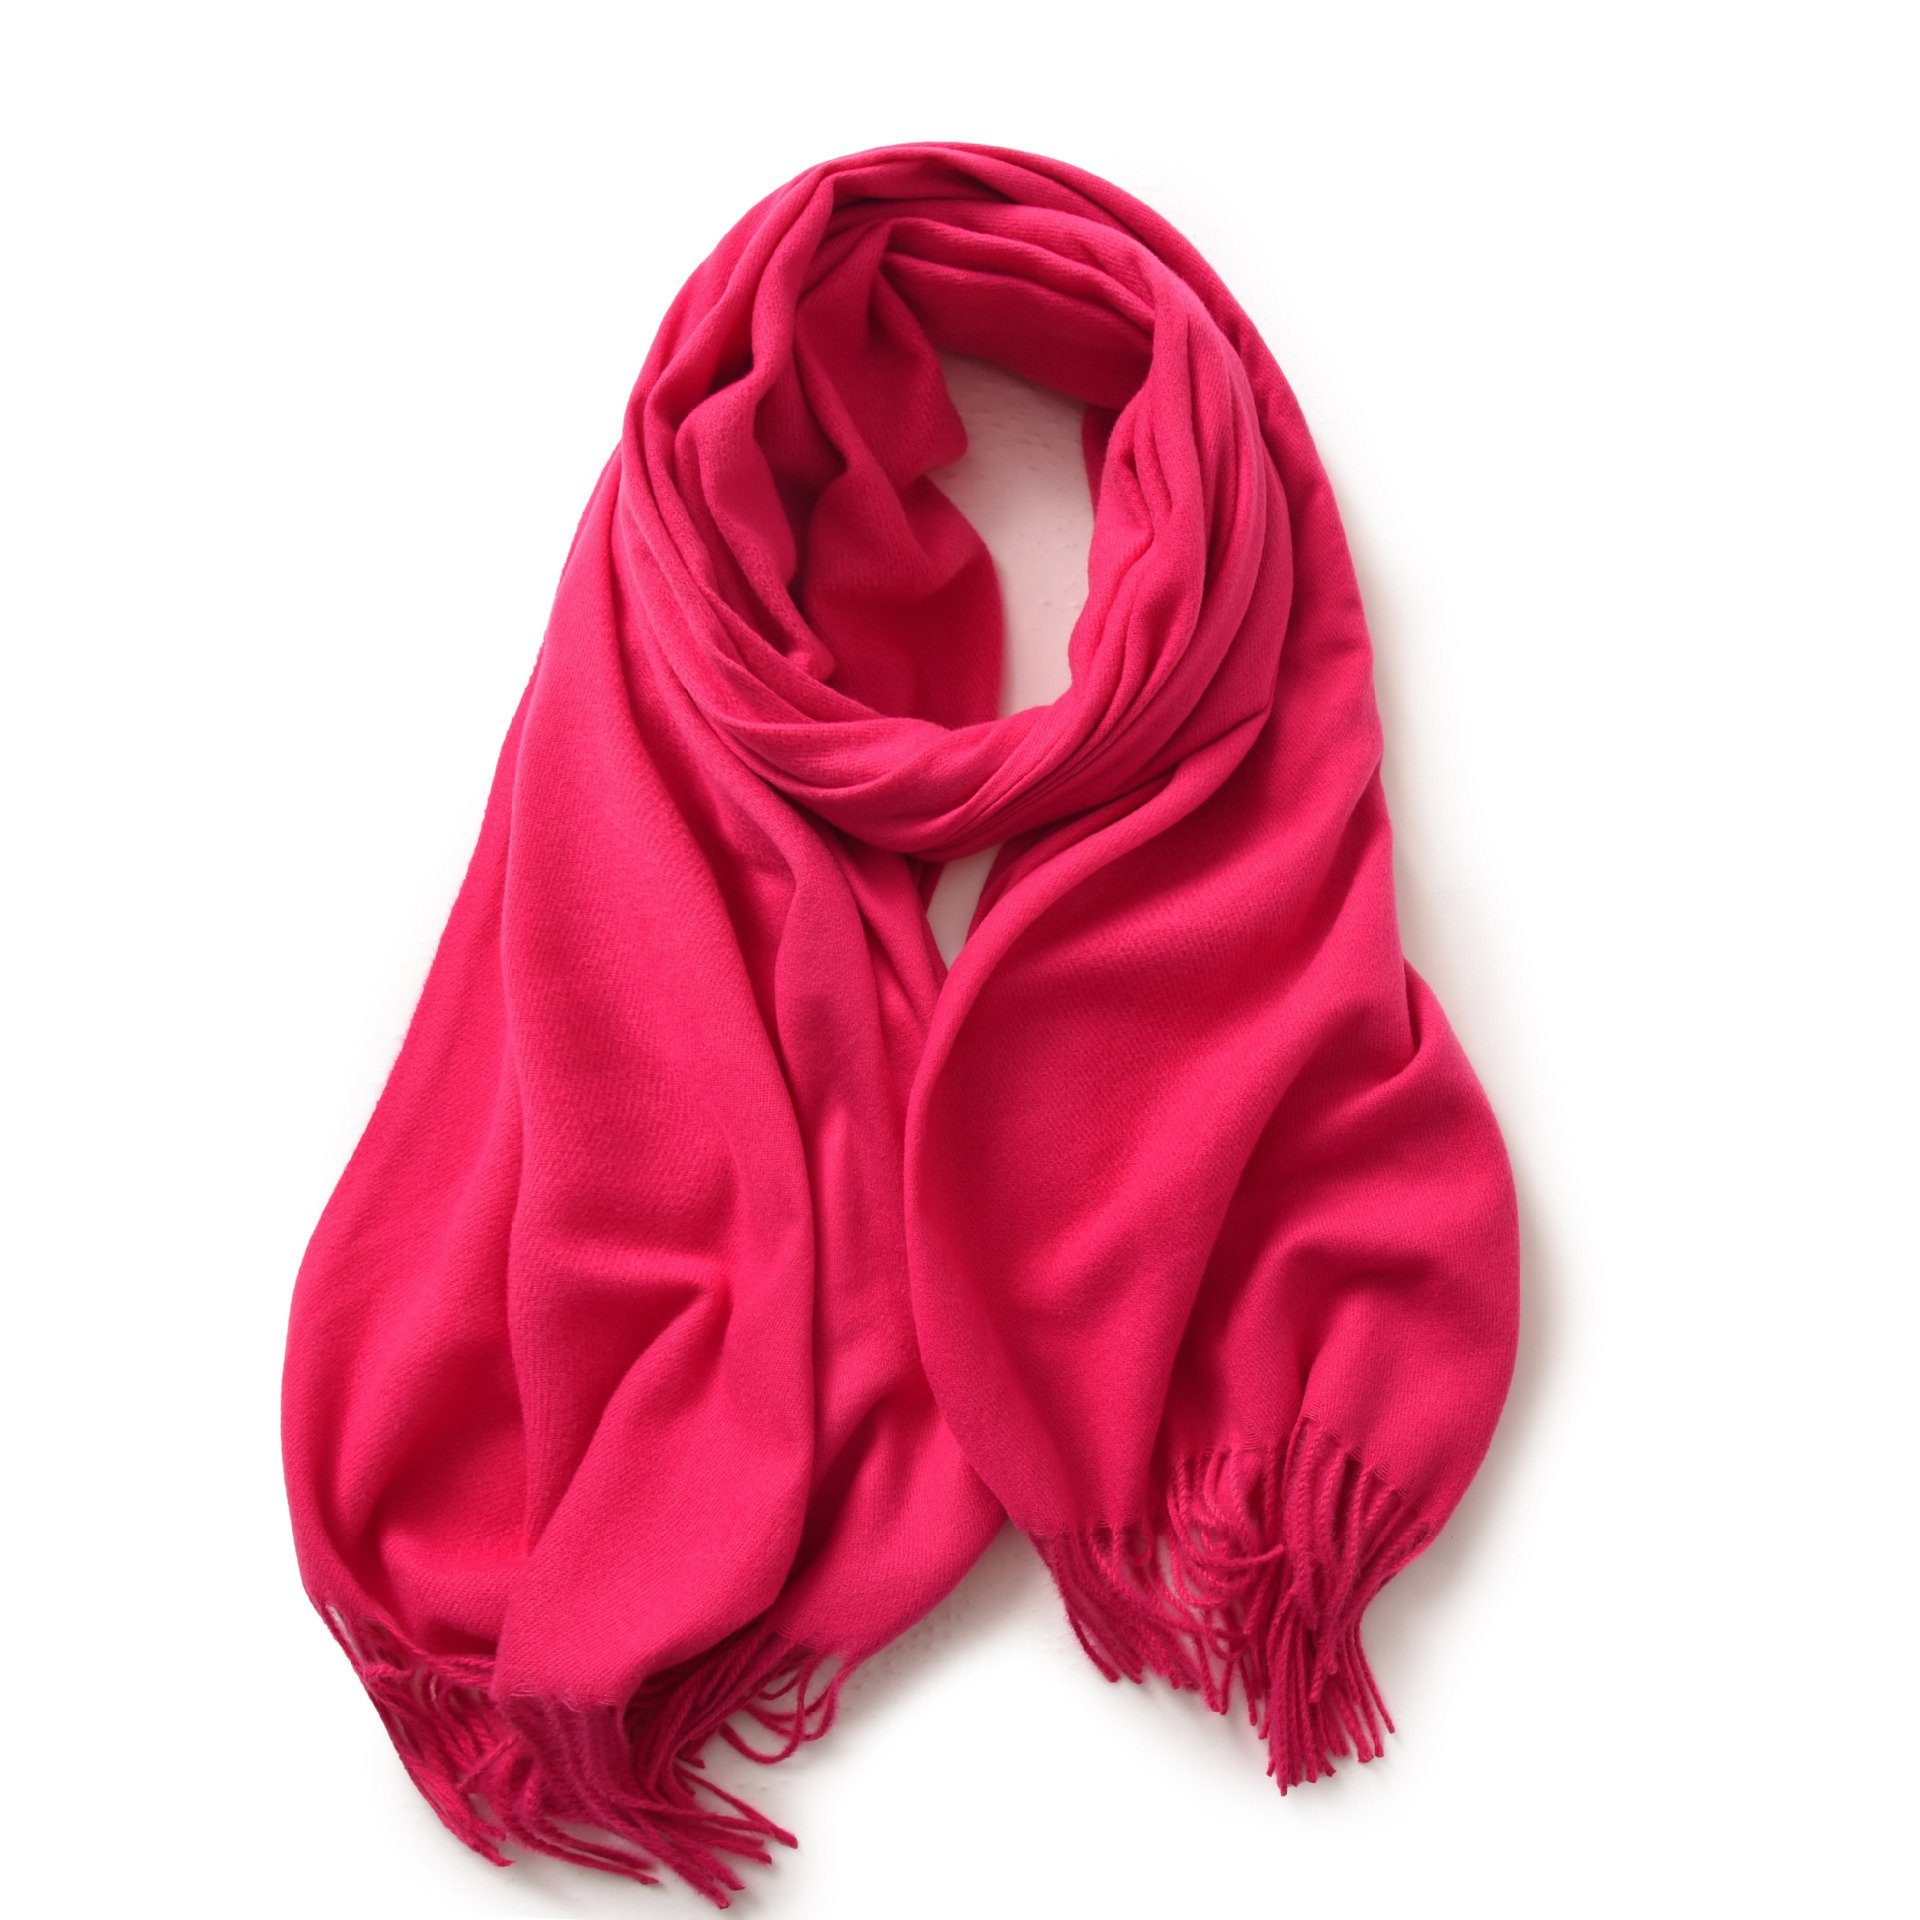 XDeer Modeschal Damen Schal,kuschelweich,Winter Schal Poncho Qualität,Neuer Stil, Damen Halstuch Geschenk für Frauen in verschiedenen Farben pink02